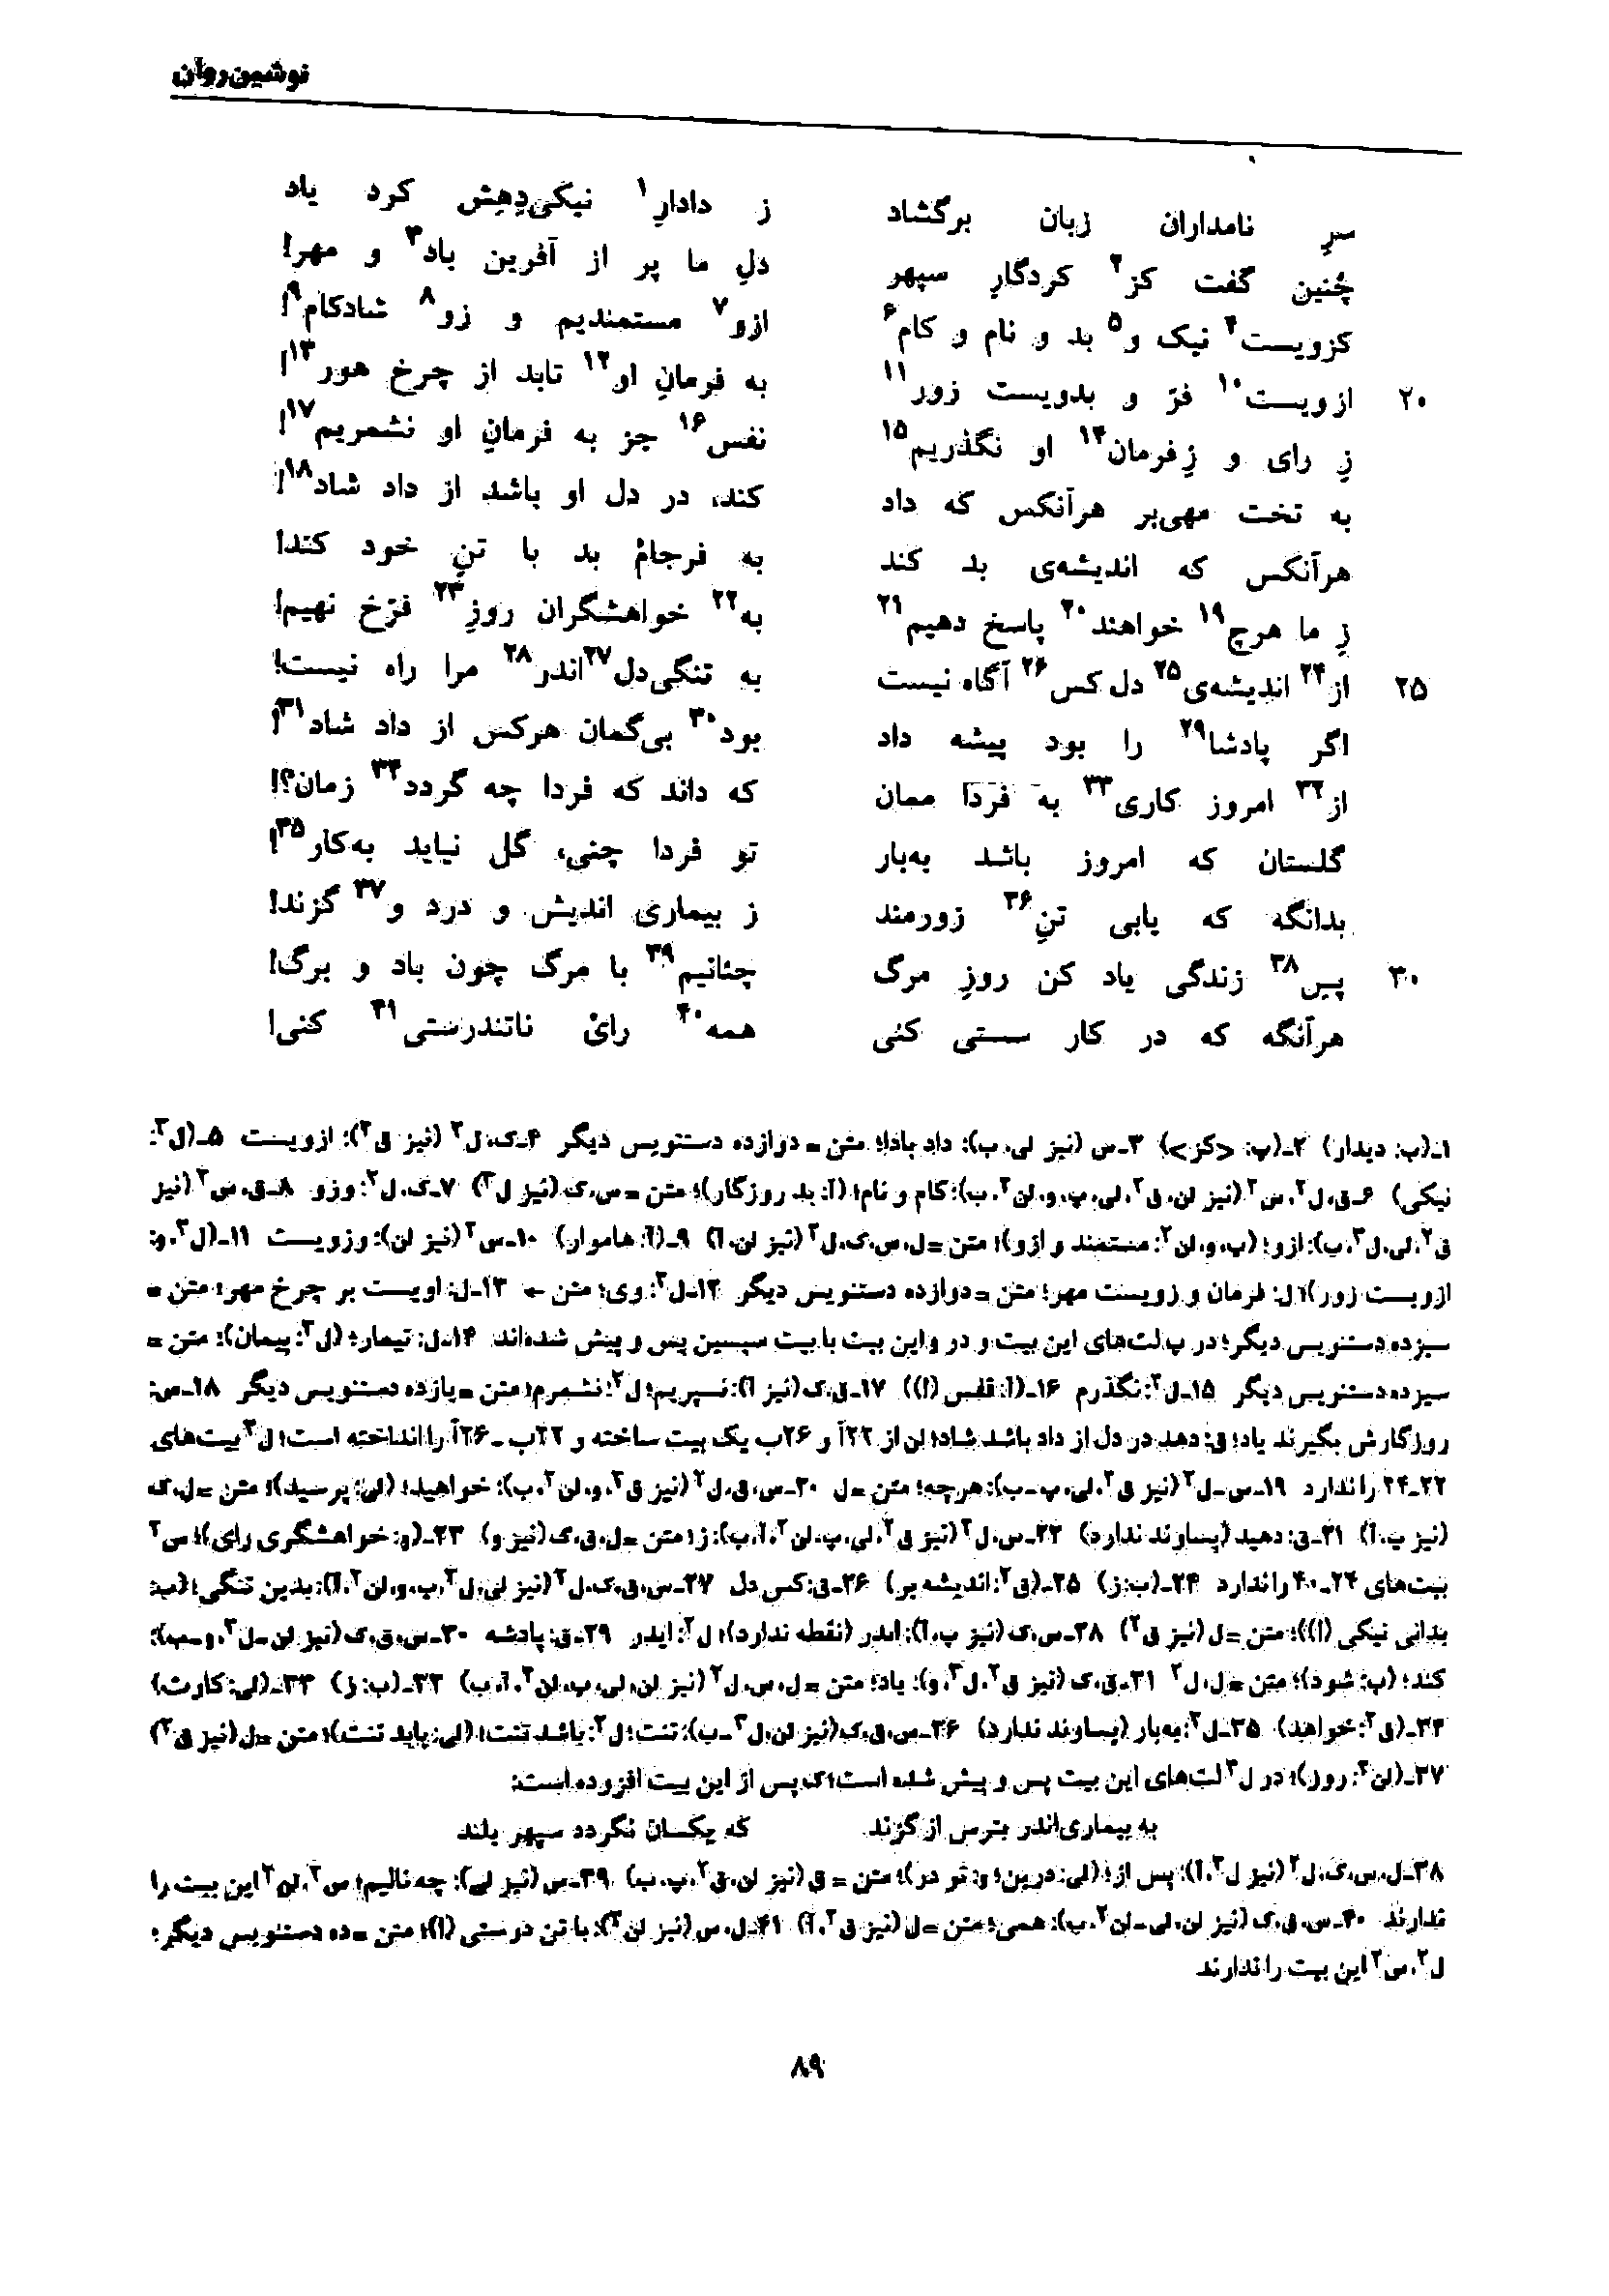 vol. 7, p. 89